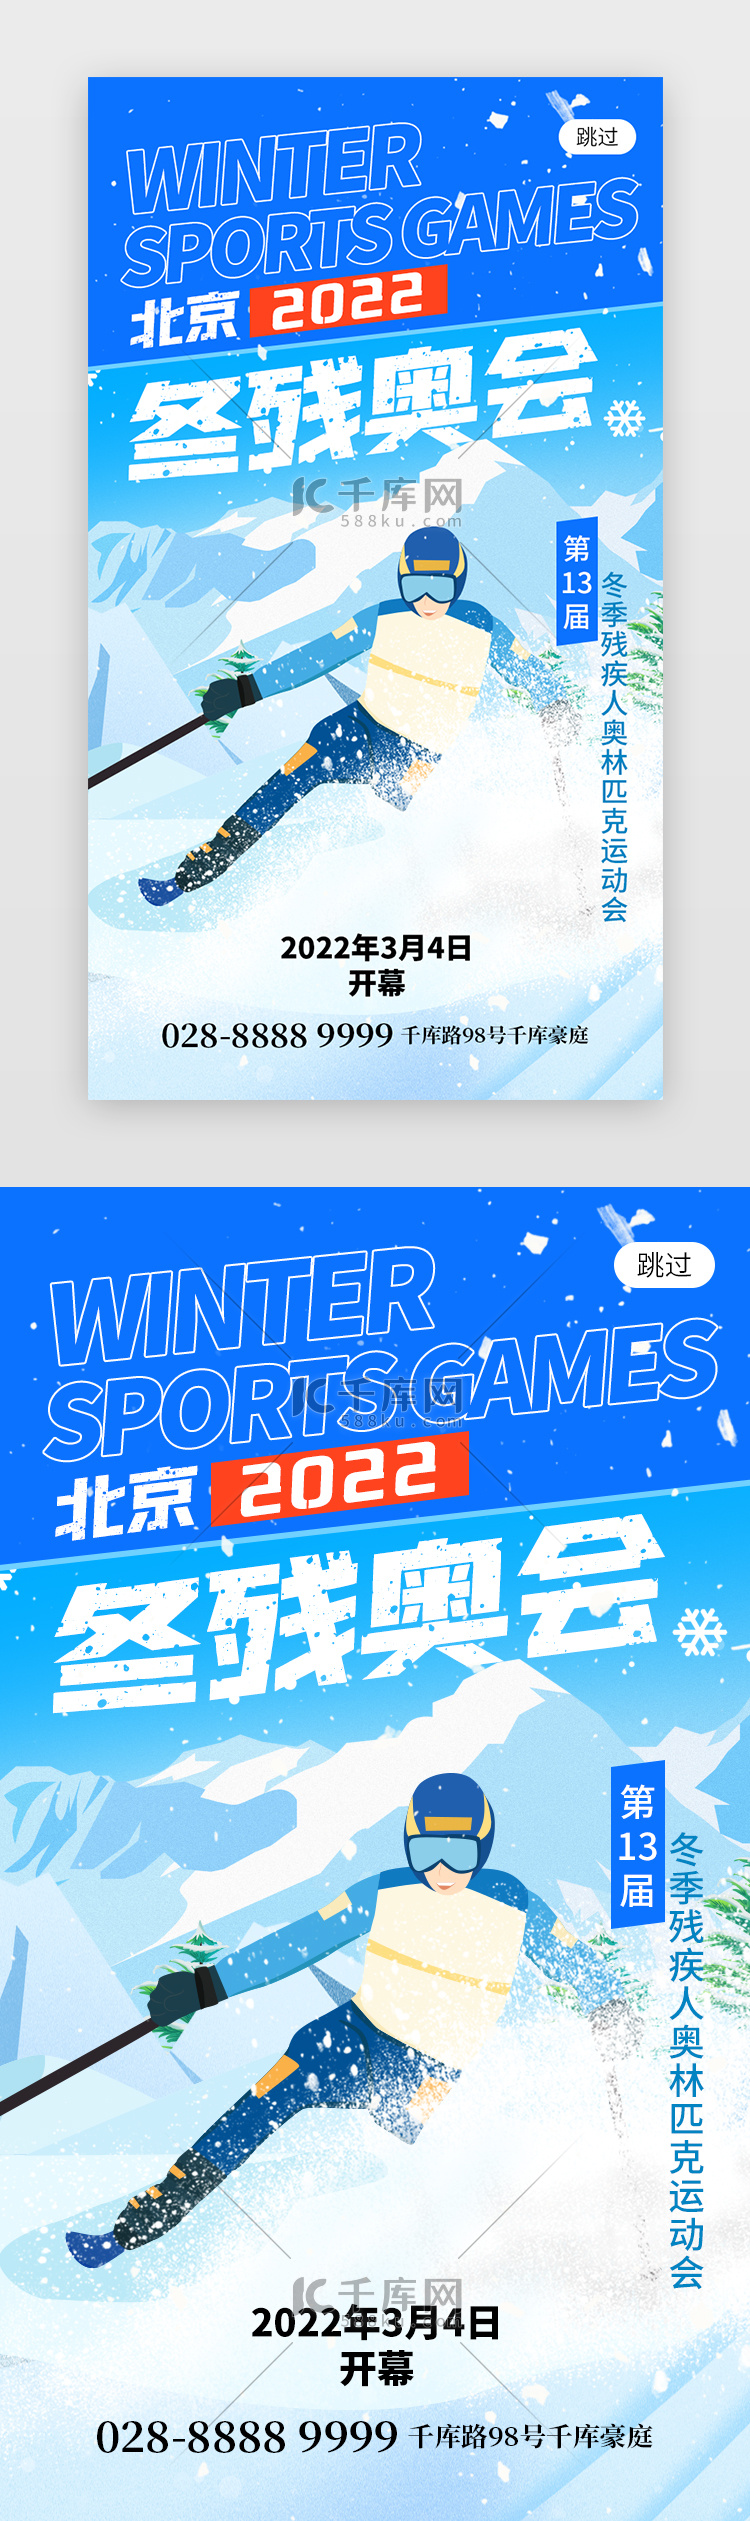 北京冬残奥会app闪屏创意蓝色运动员